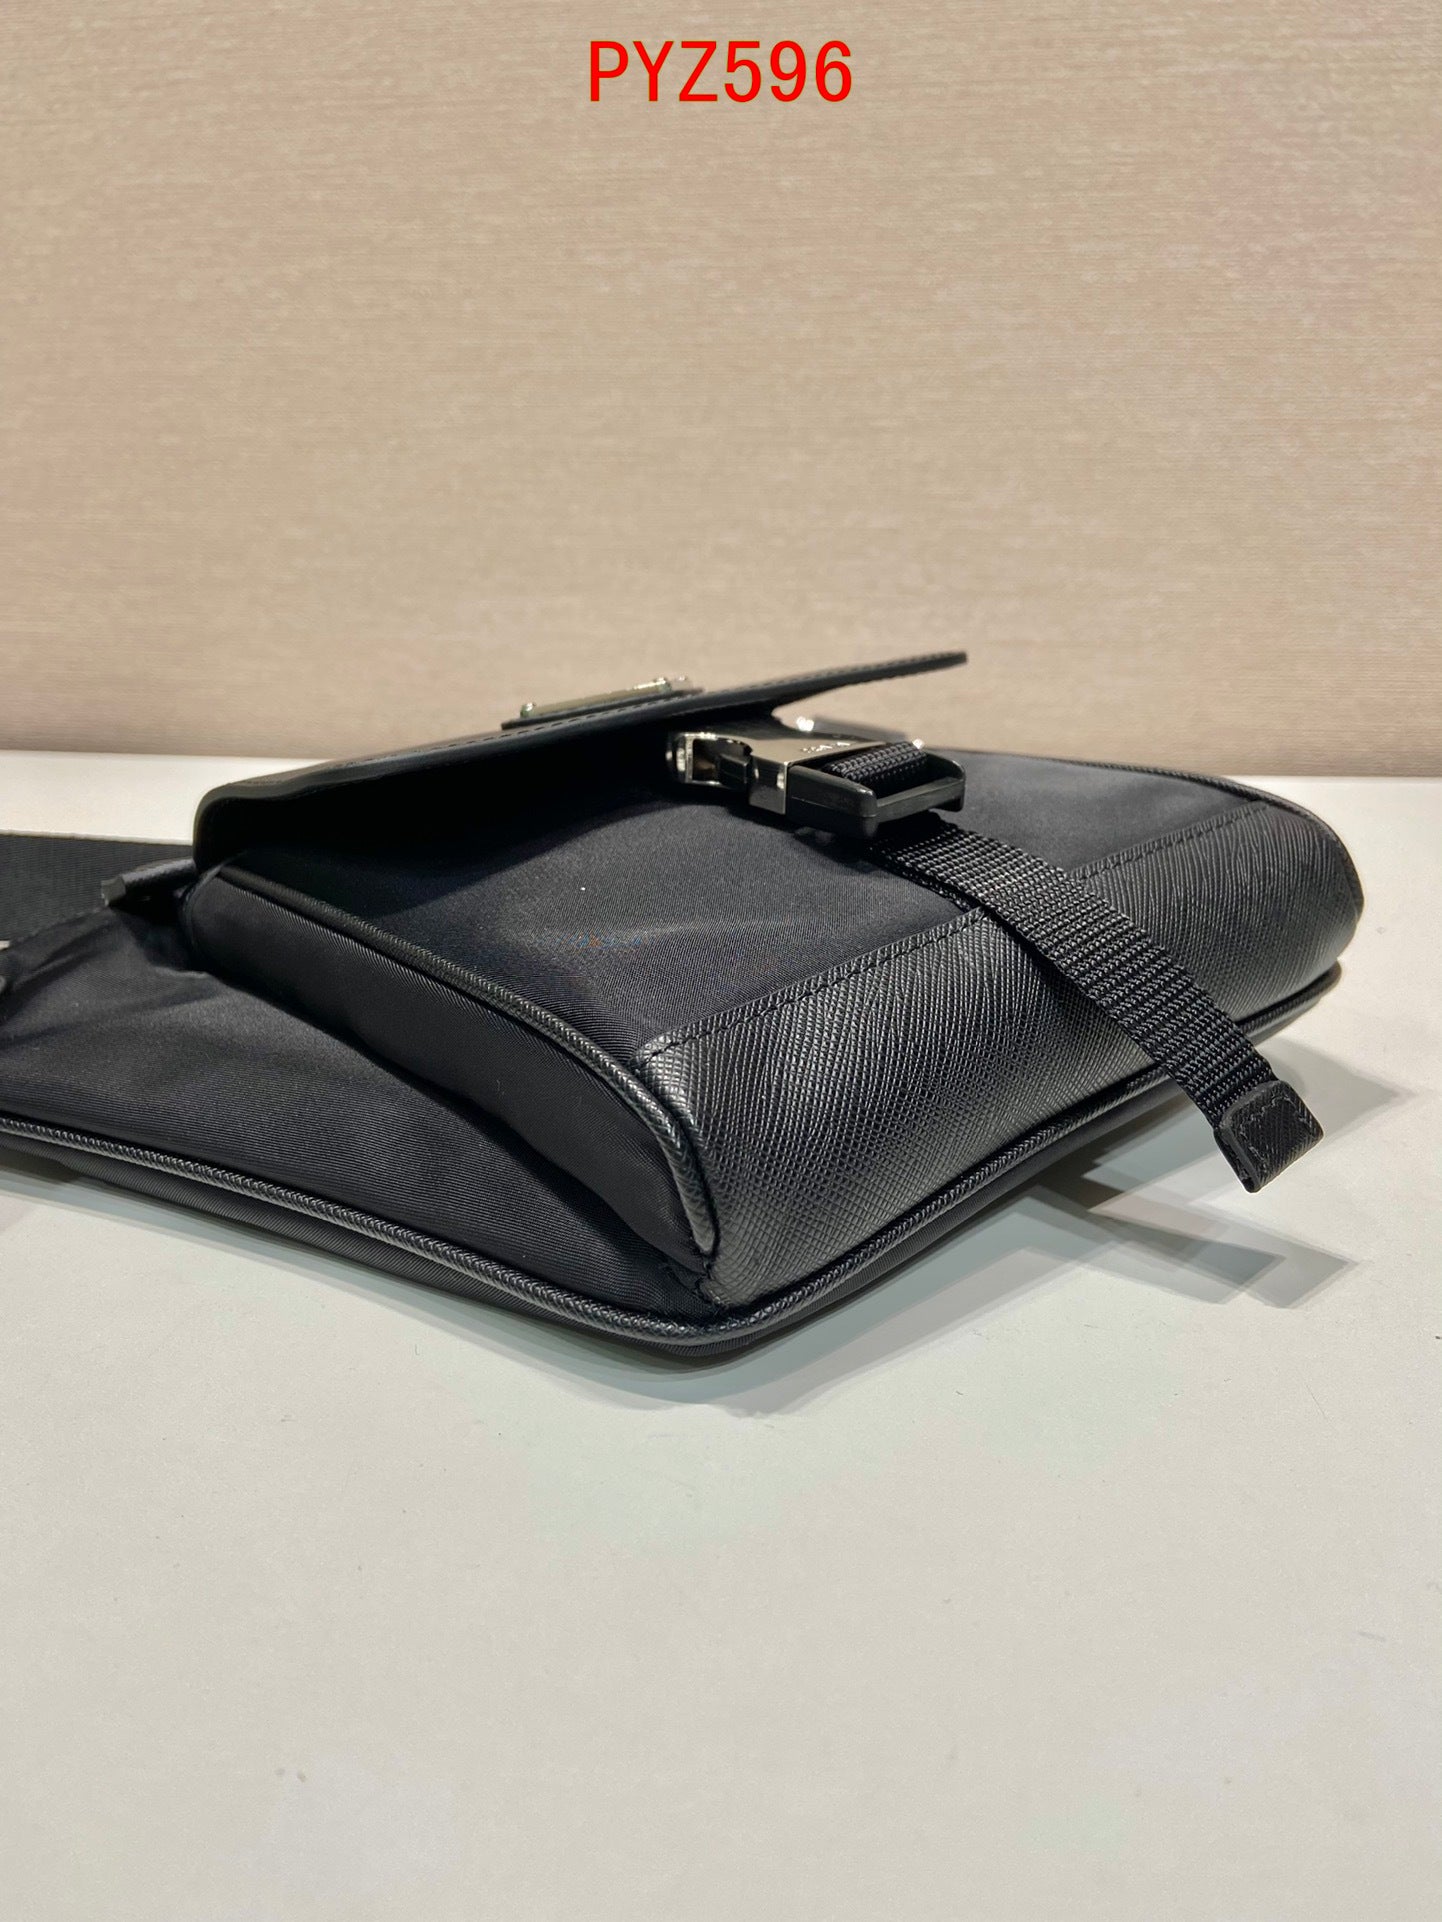 Prada Re-Nylon and Saffiano leather shoulder bag